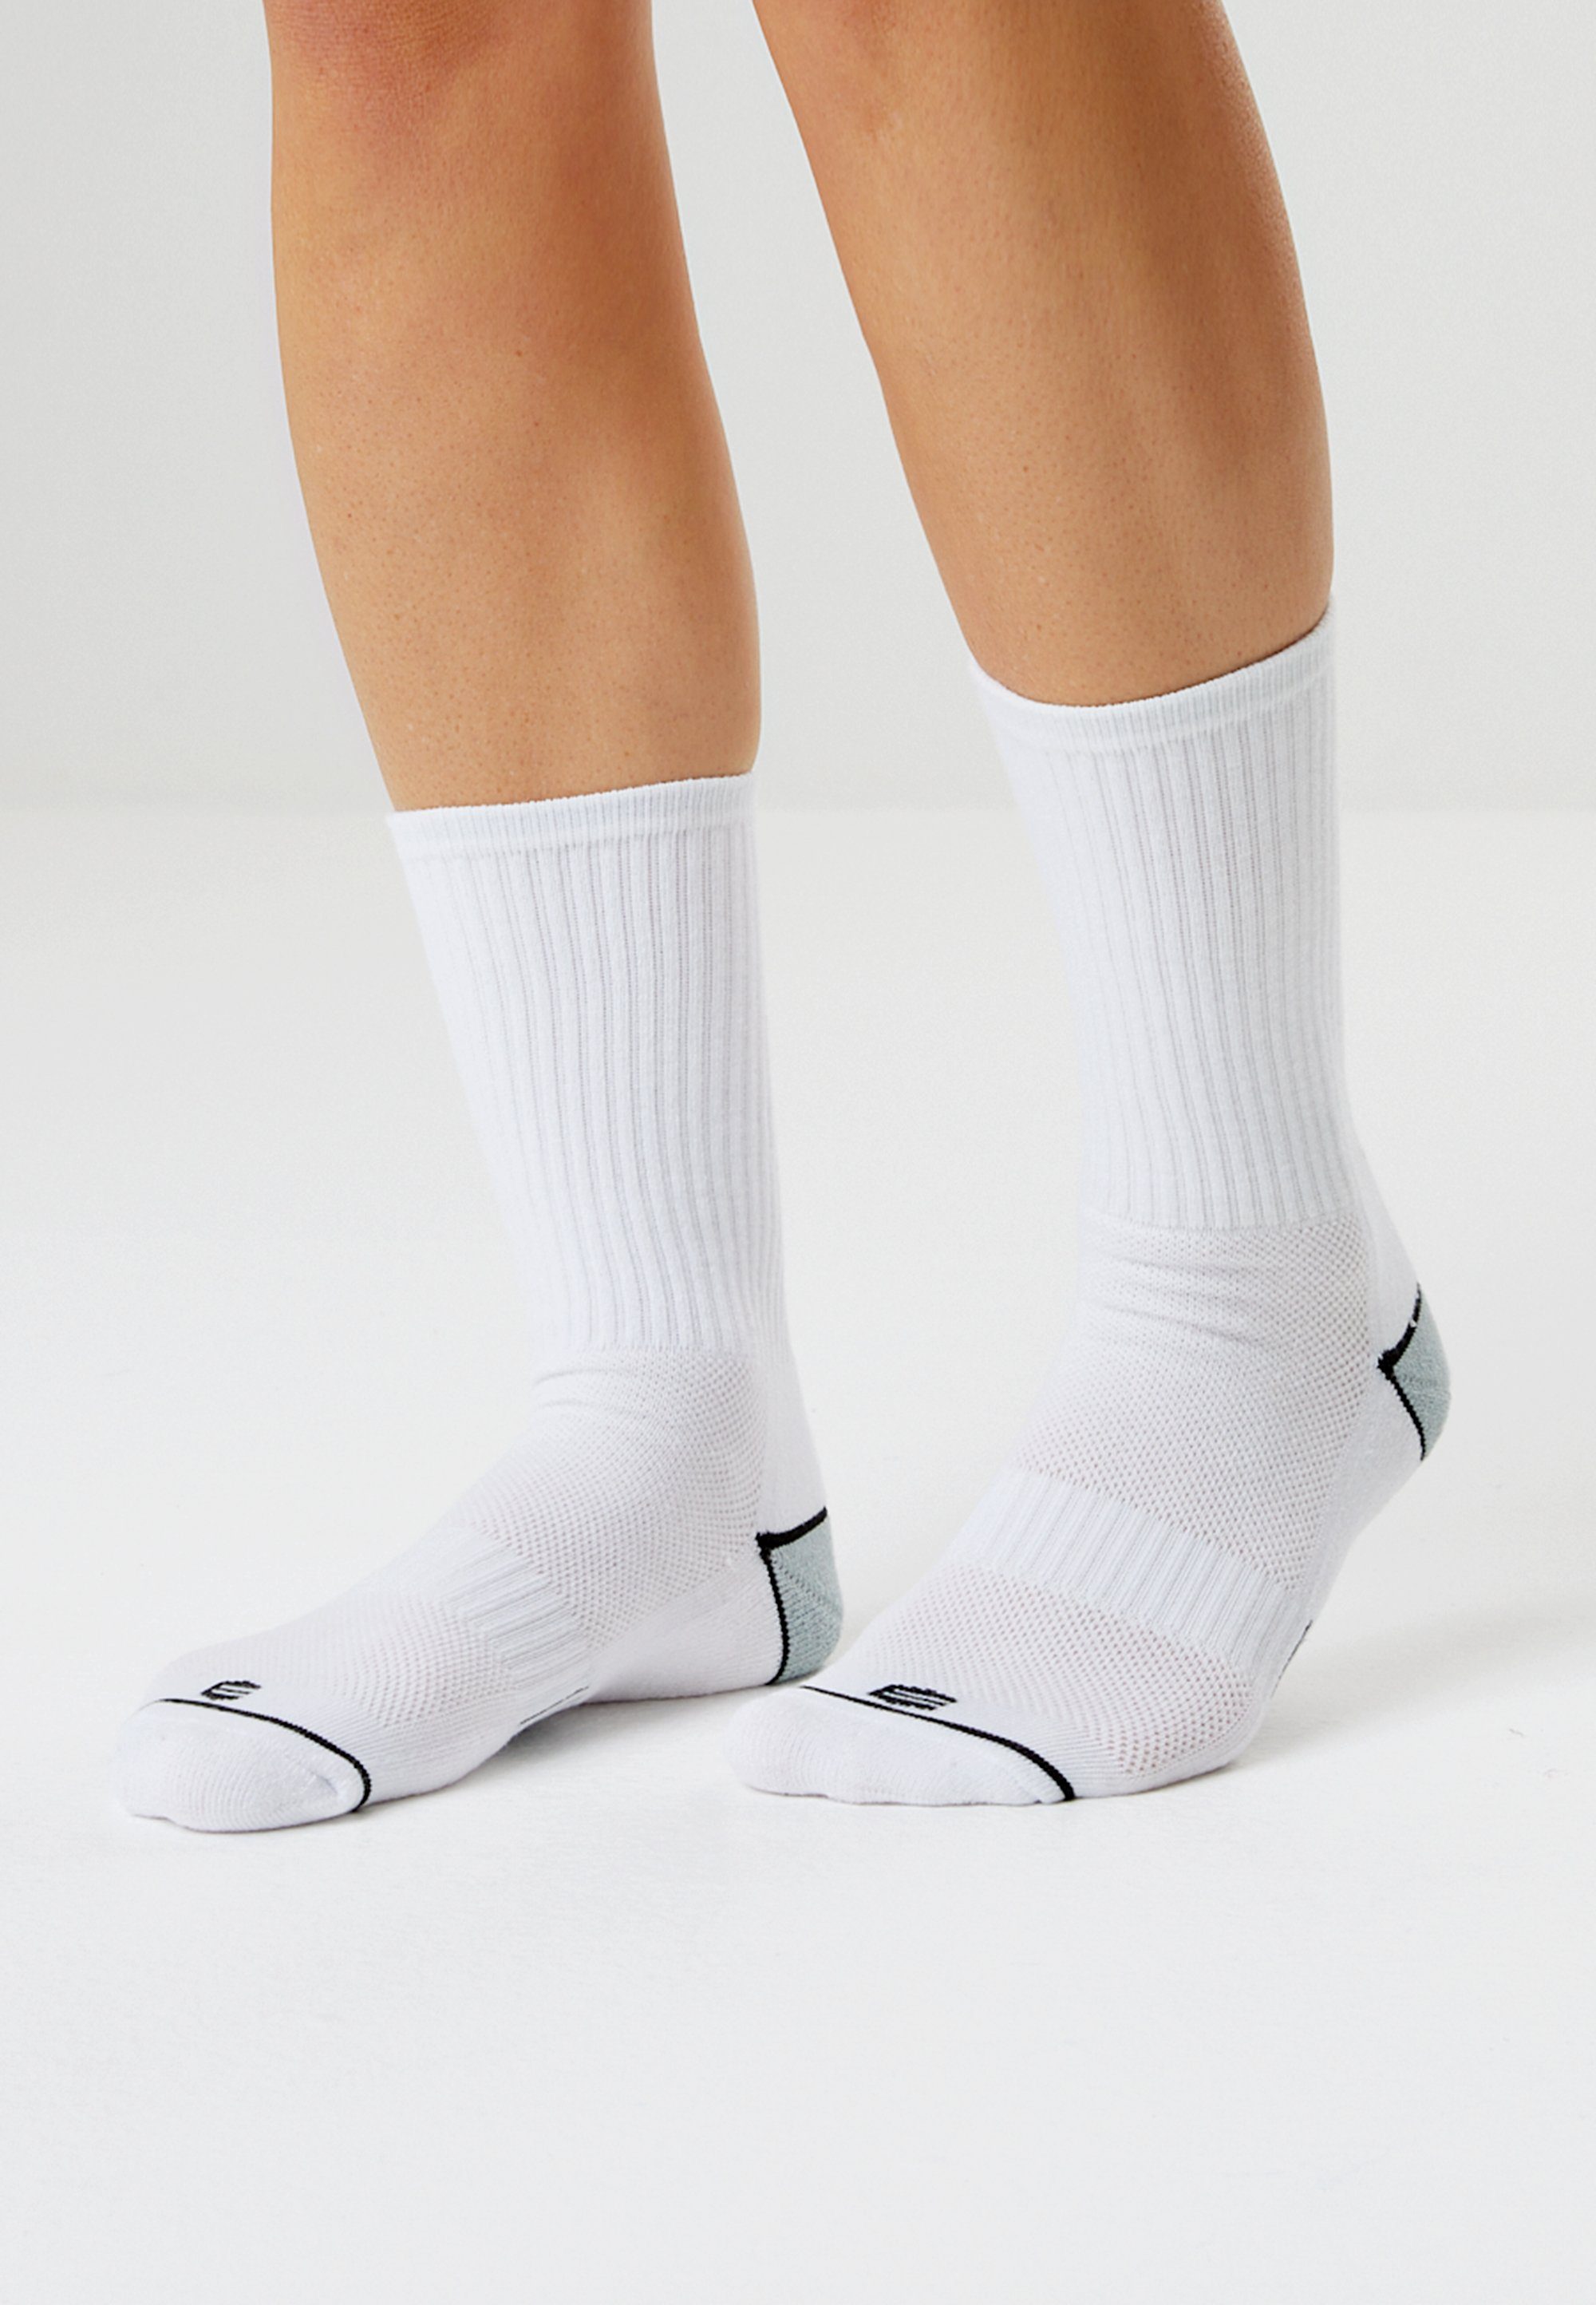 ENDURANCE in weiß (8-Paar) Hoope Socken atmungsaktiver Qualität